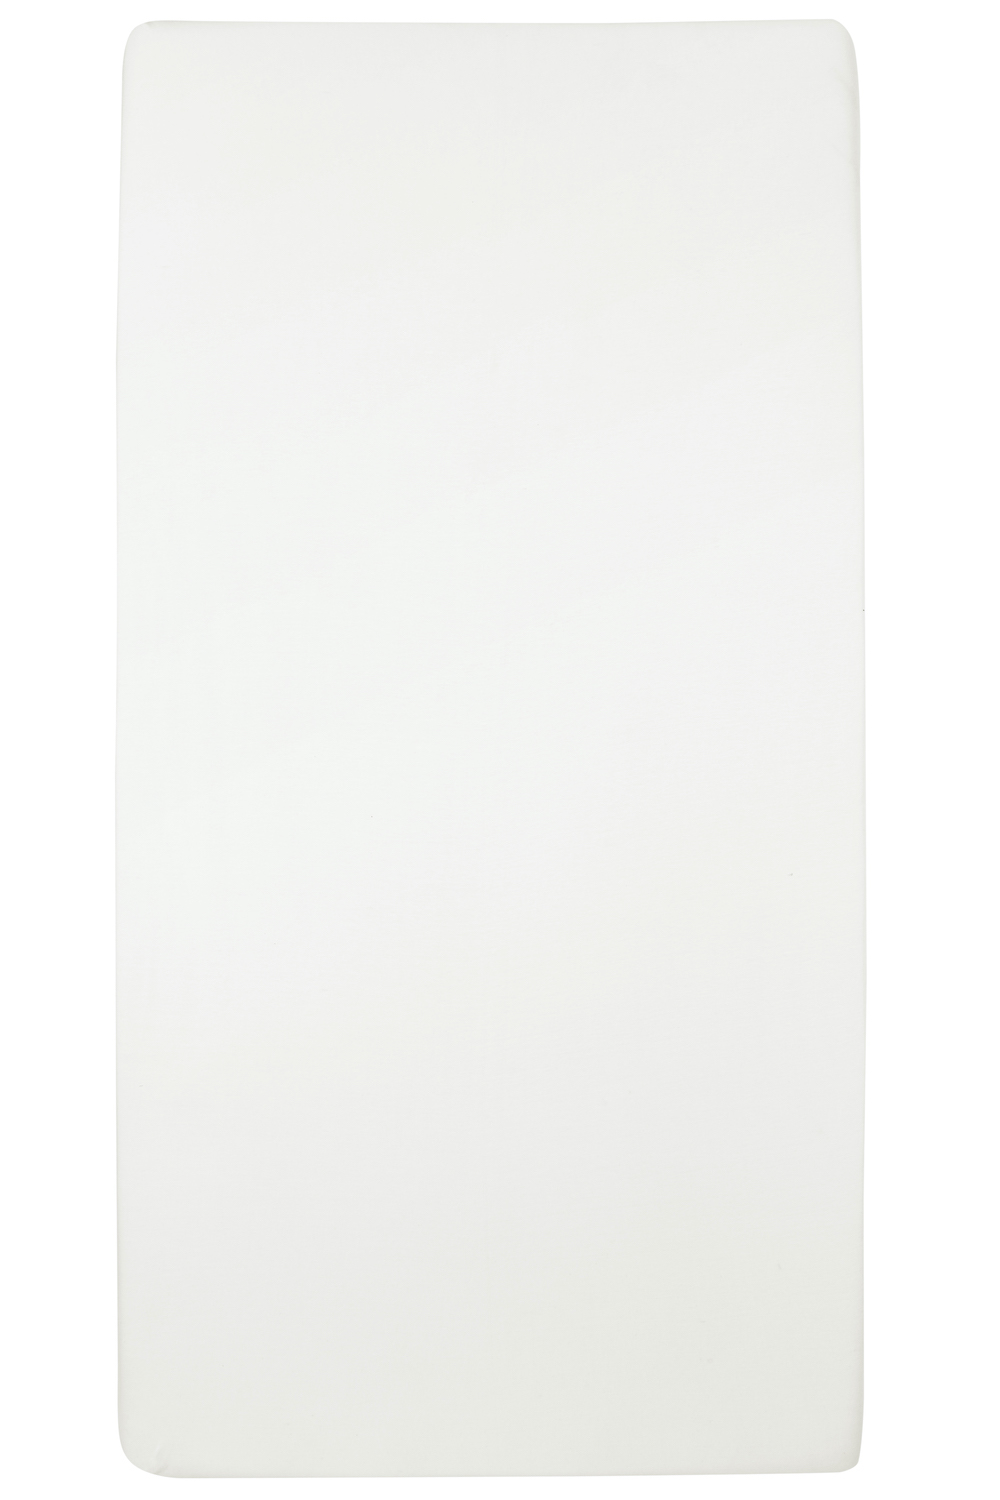 Hoeslaken eenpersoonsbed Uni - warm white - 80x200cm